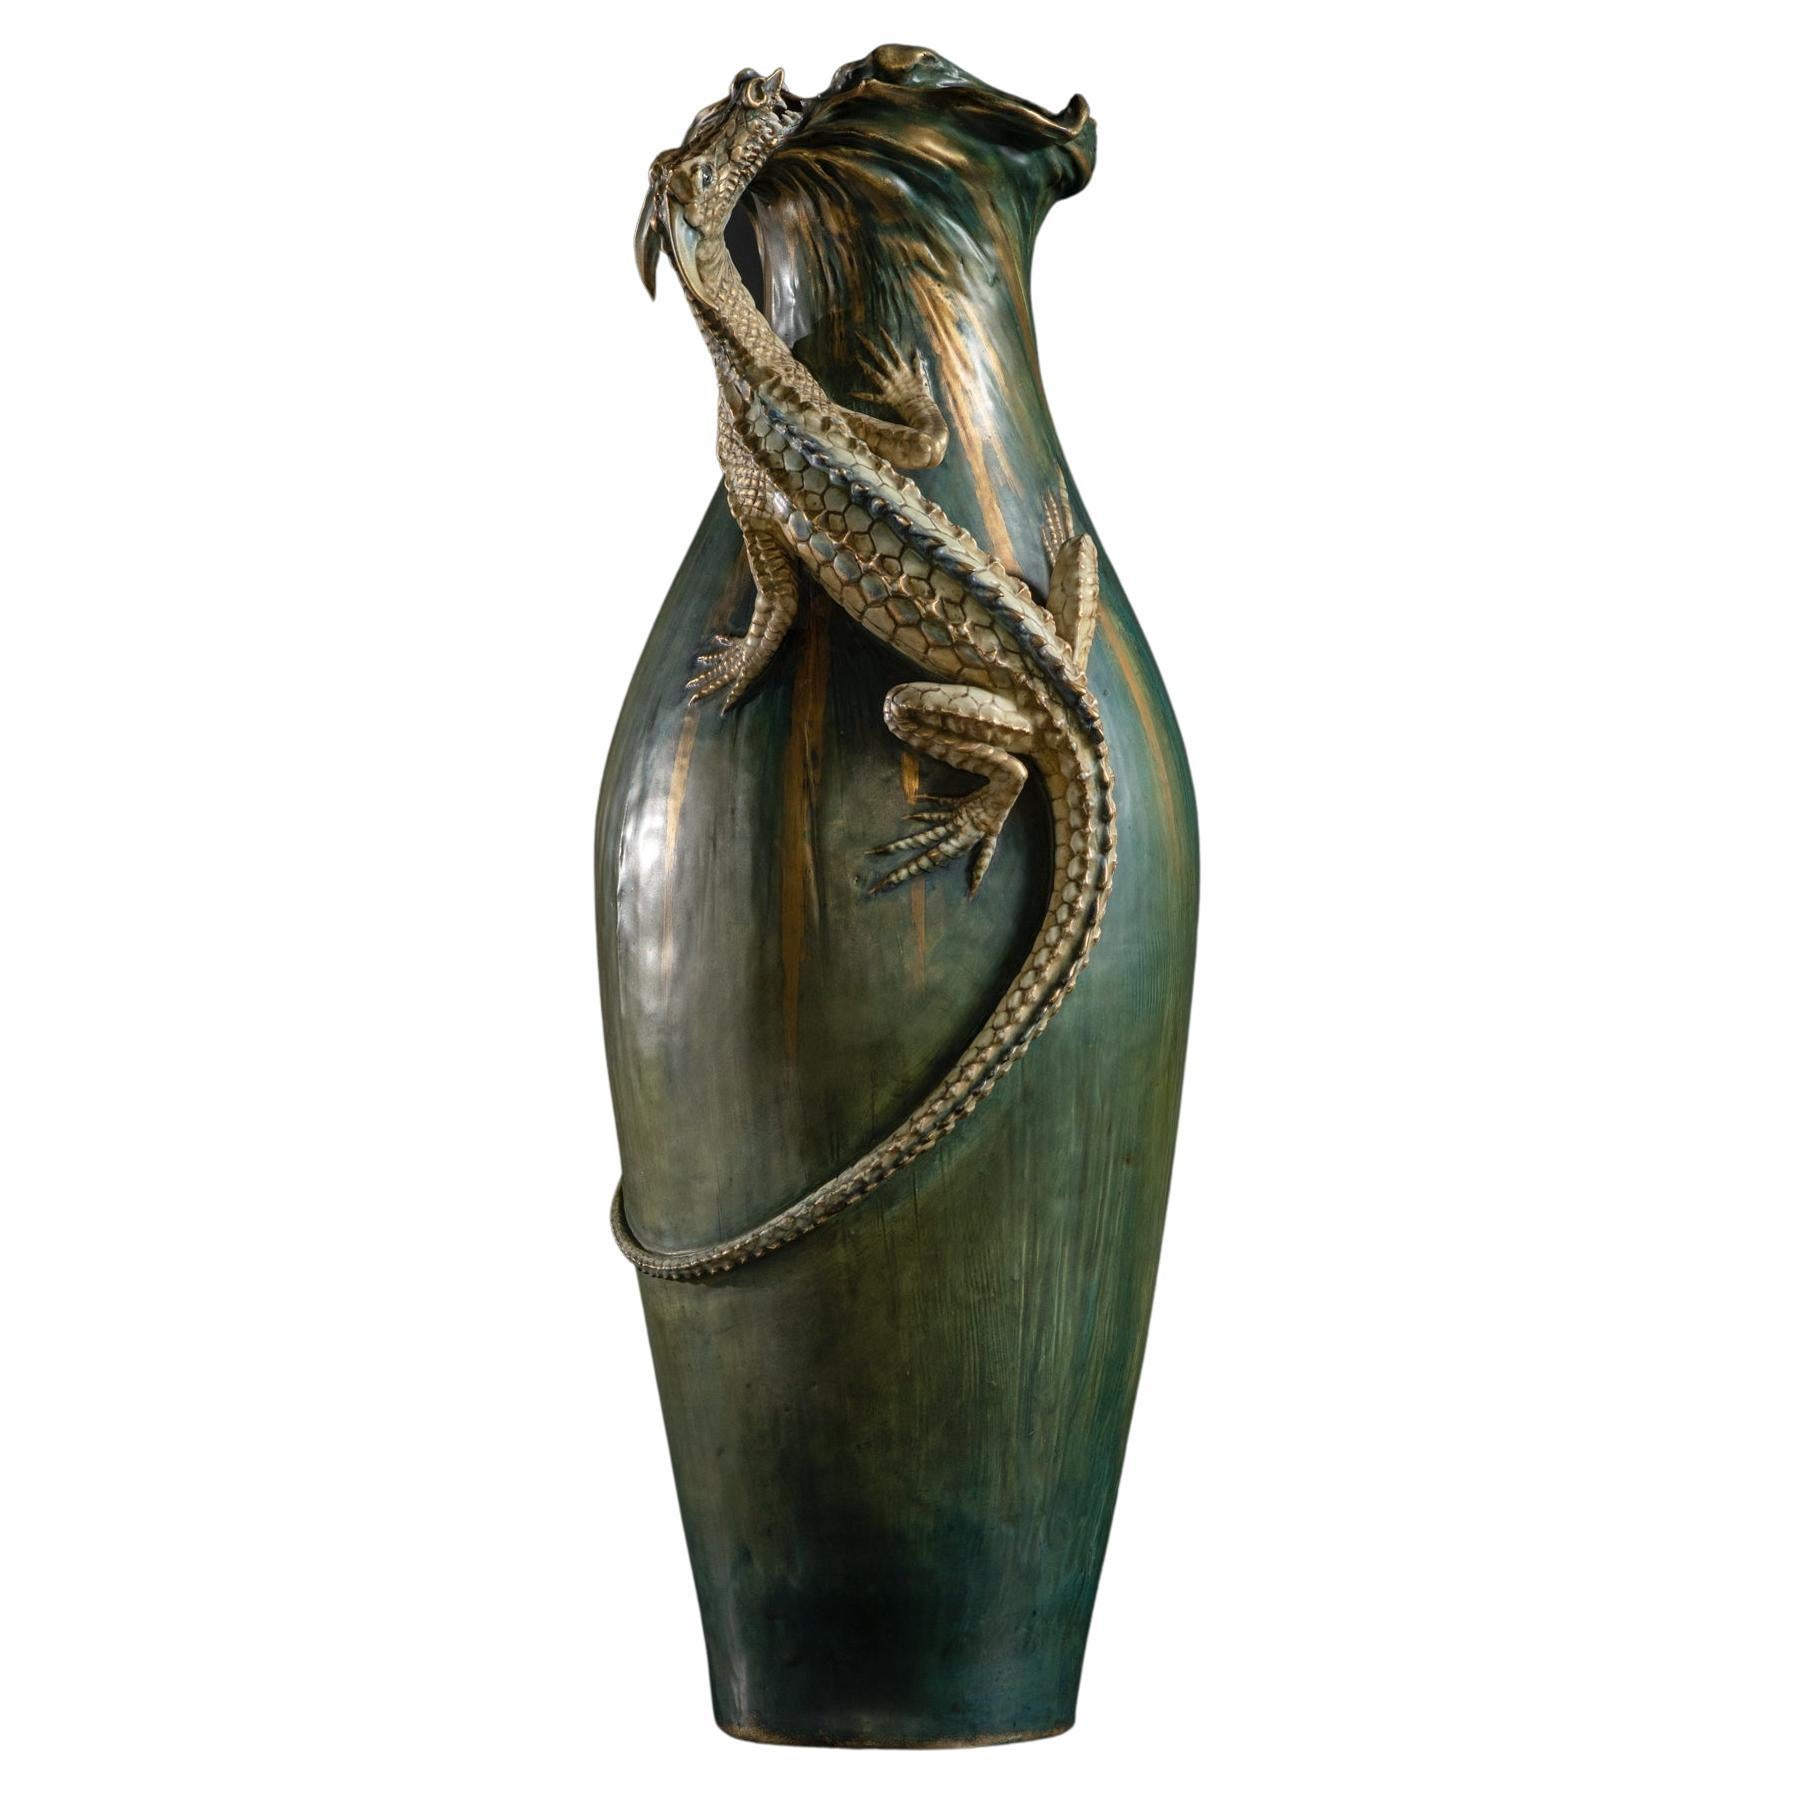 Monumentale Amphora-Vase im Jugendstil mit Saurian-Muster von Eduard Stellmacher & Co.